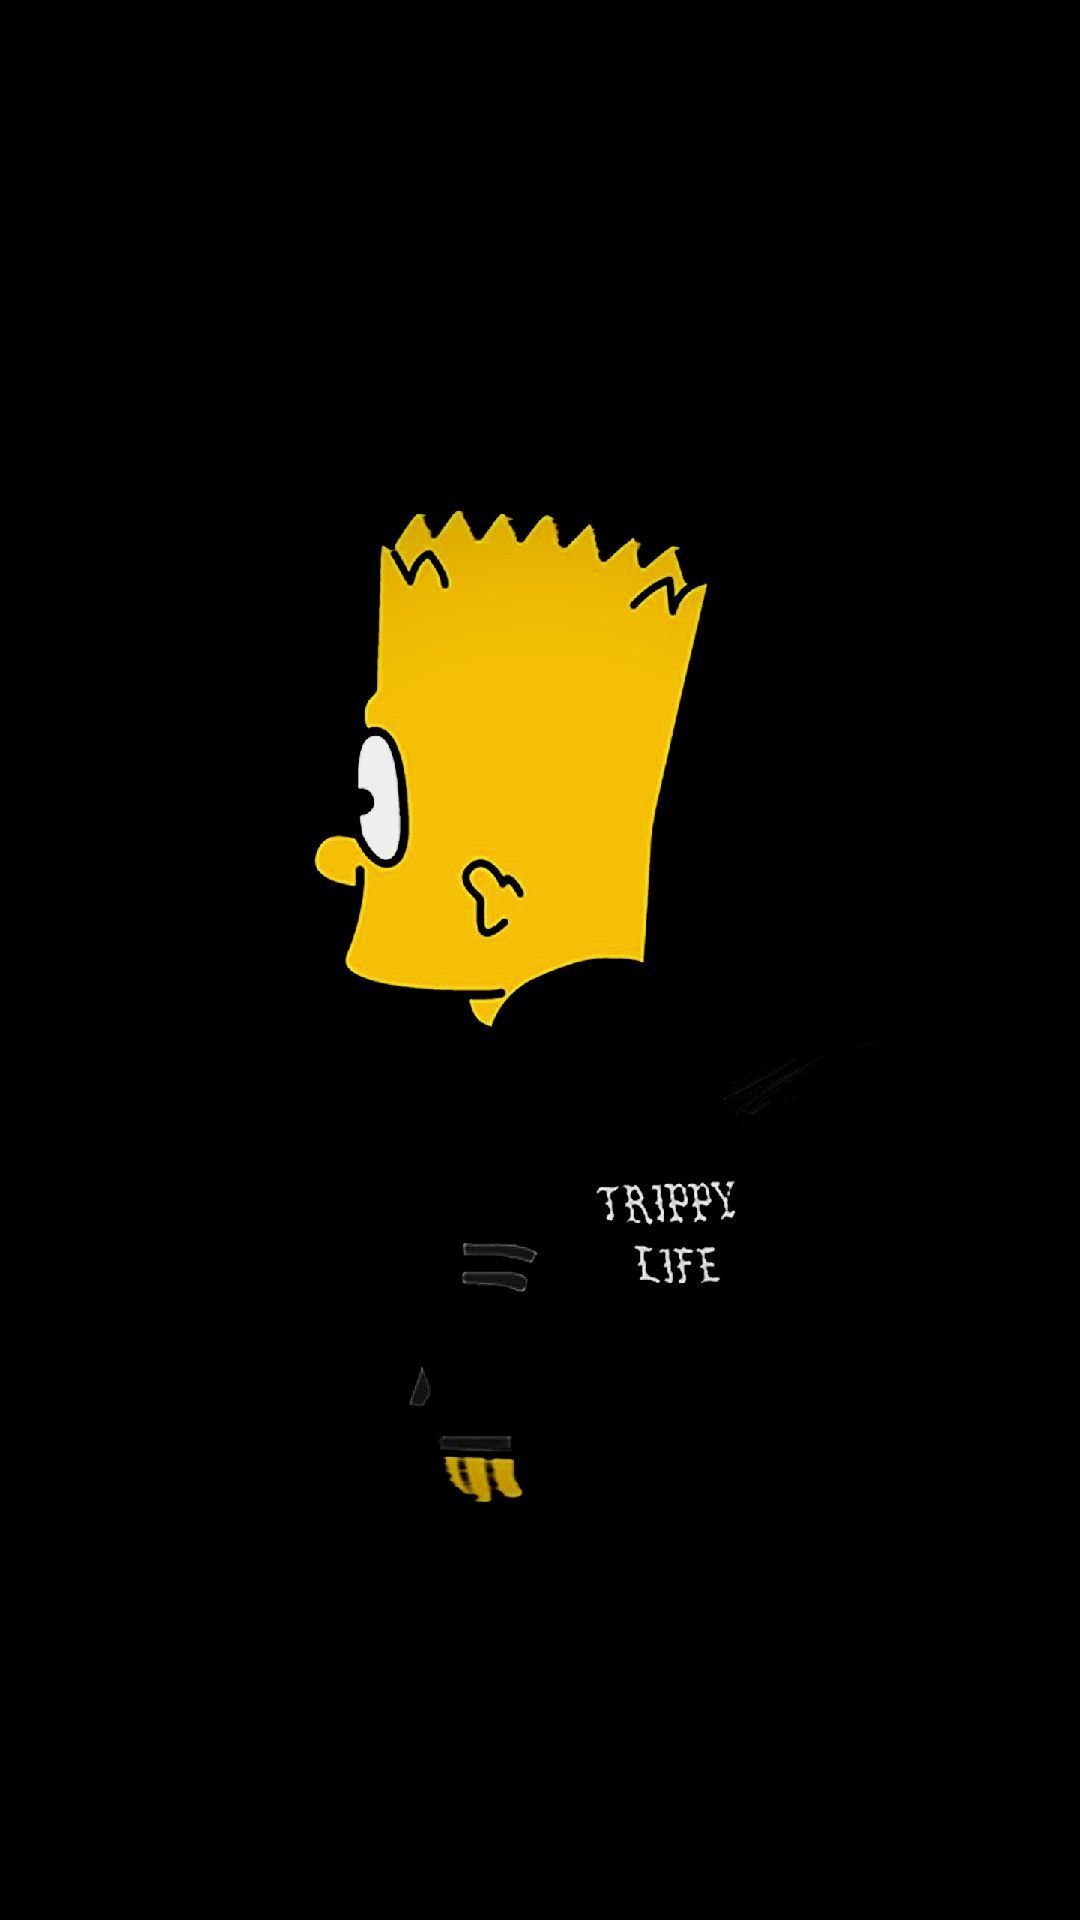 Đừng bỏ lỡ hình ảnh của nhà Simpson - gia đình hài hước và đầy sức sống! Cười tắt hơi với những trò đùa dí dỏm của Homer Simpson và những khoảnh khắc đáng yêu của Bart.